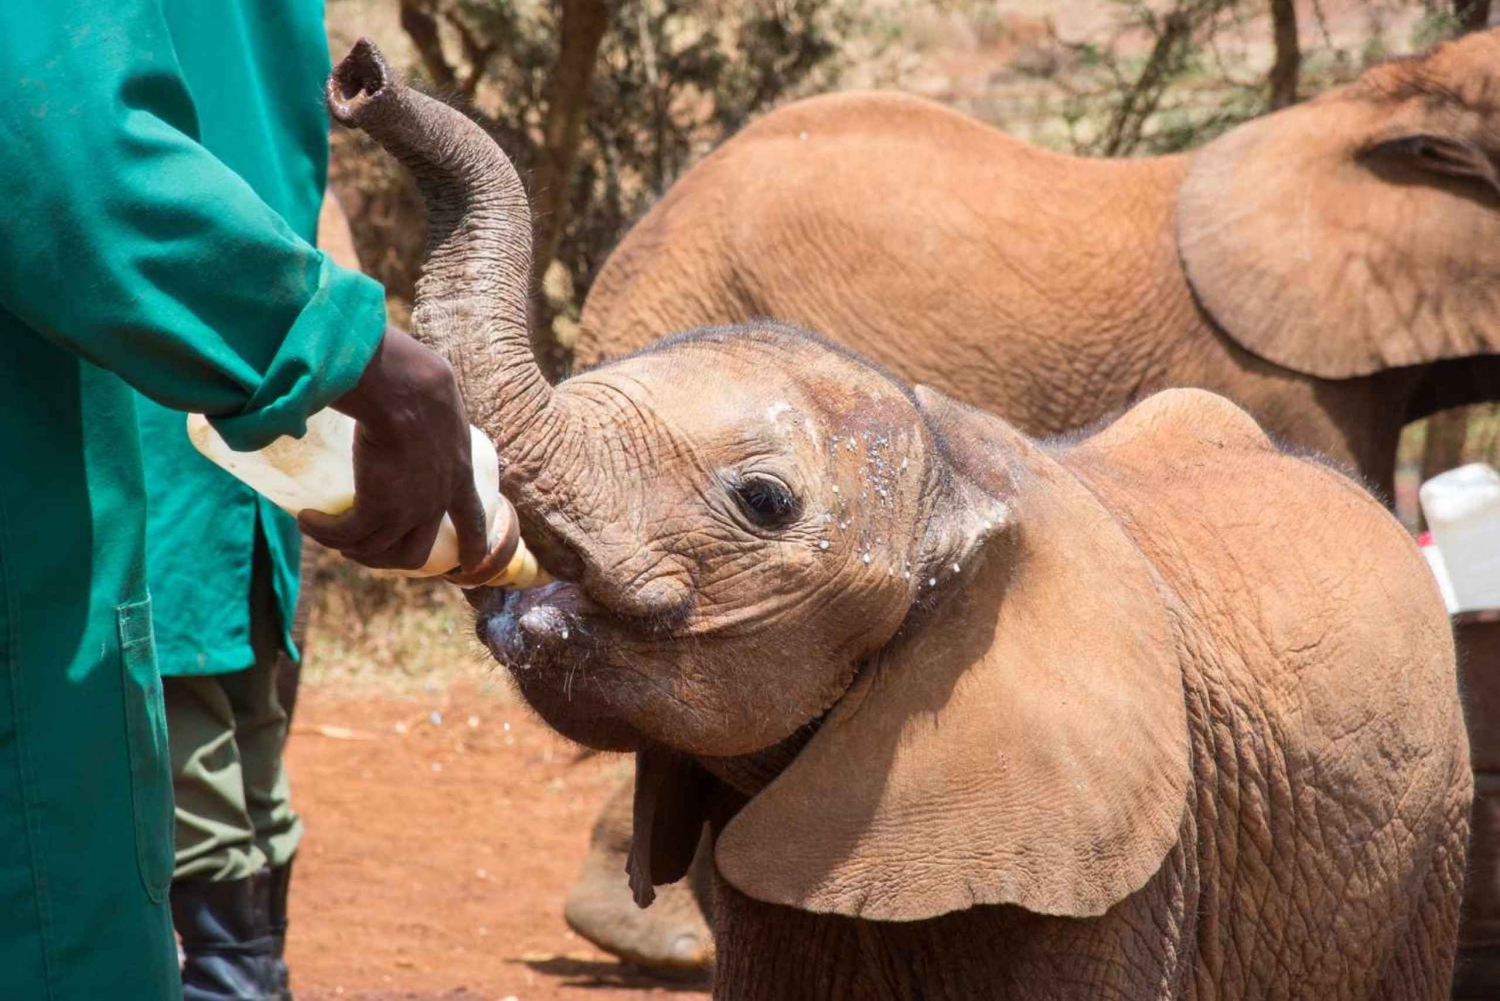 Nairobi: tour del Parco Nazionale, del Baby Elephant e del Centro Giraffe